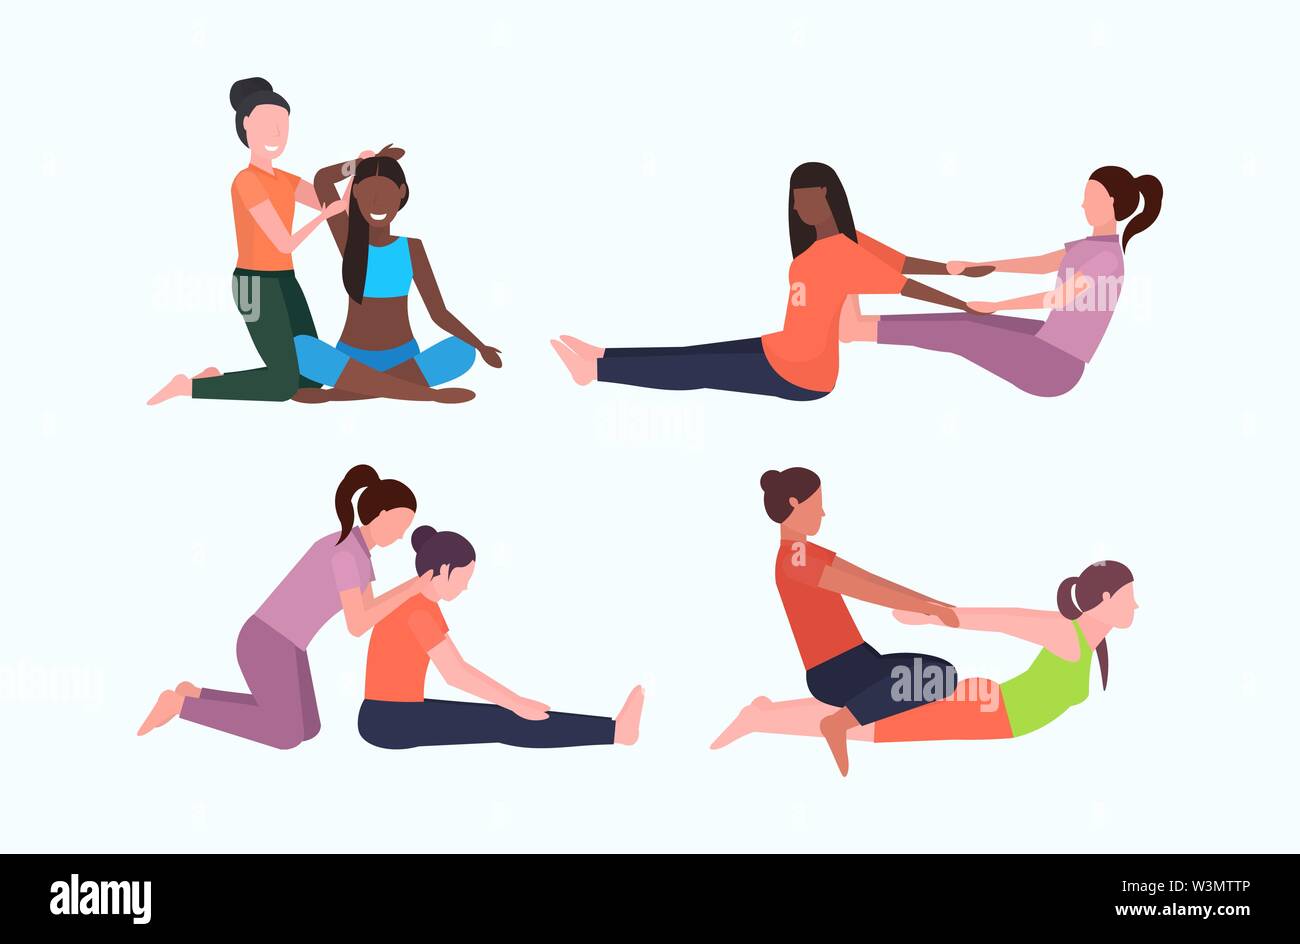 Impostare personal trainer facendo esercizi di stretching con ragazza istruttore di fitness ad aiutare la donna a tendere i muscoli pone diversi concetti di allenamento Illustrazione Vettoriale